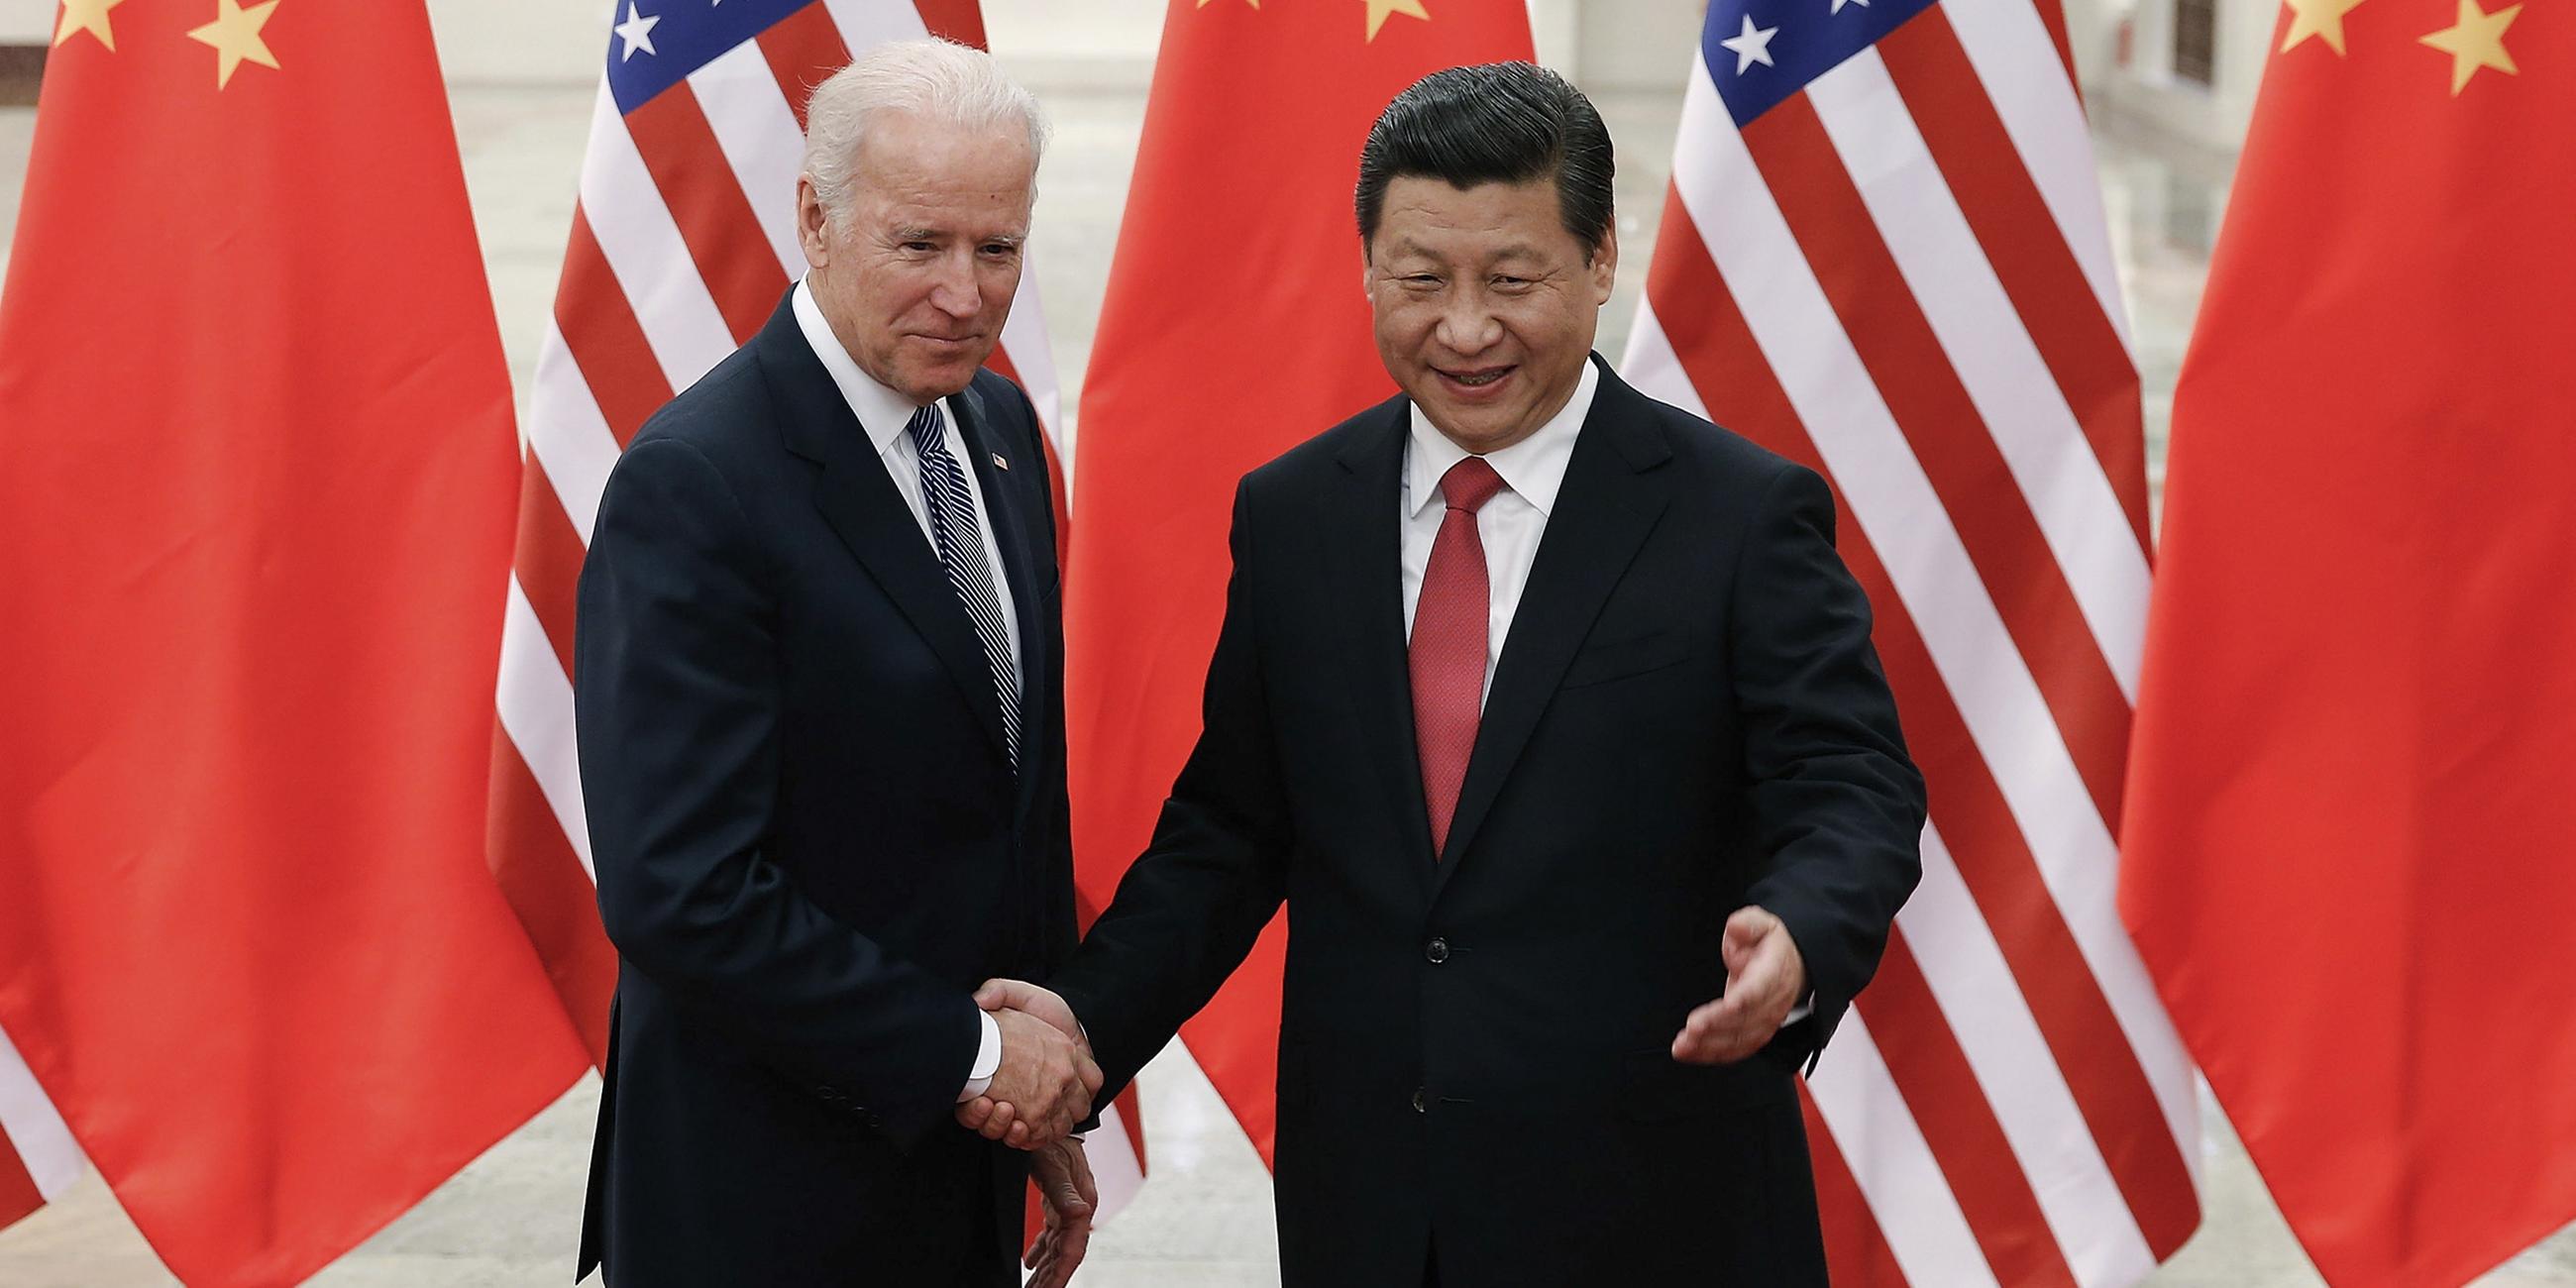 Archiv: Joe Biden und Xi Jinping